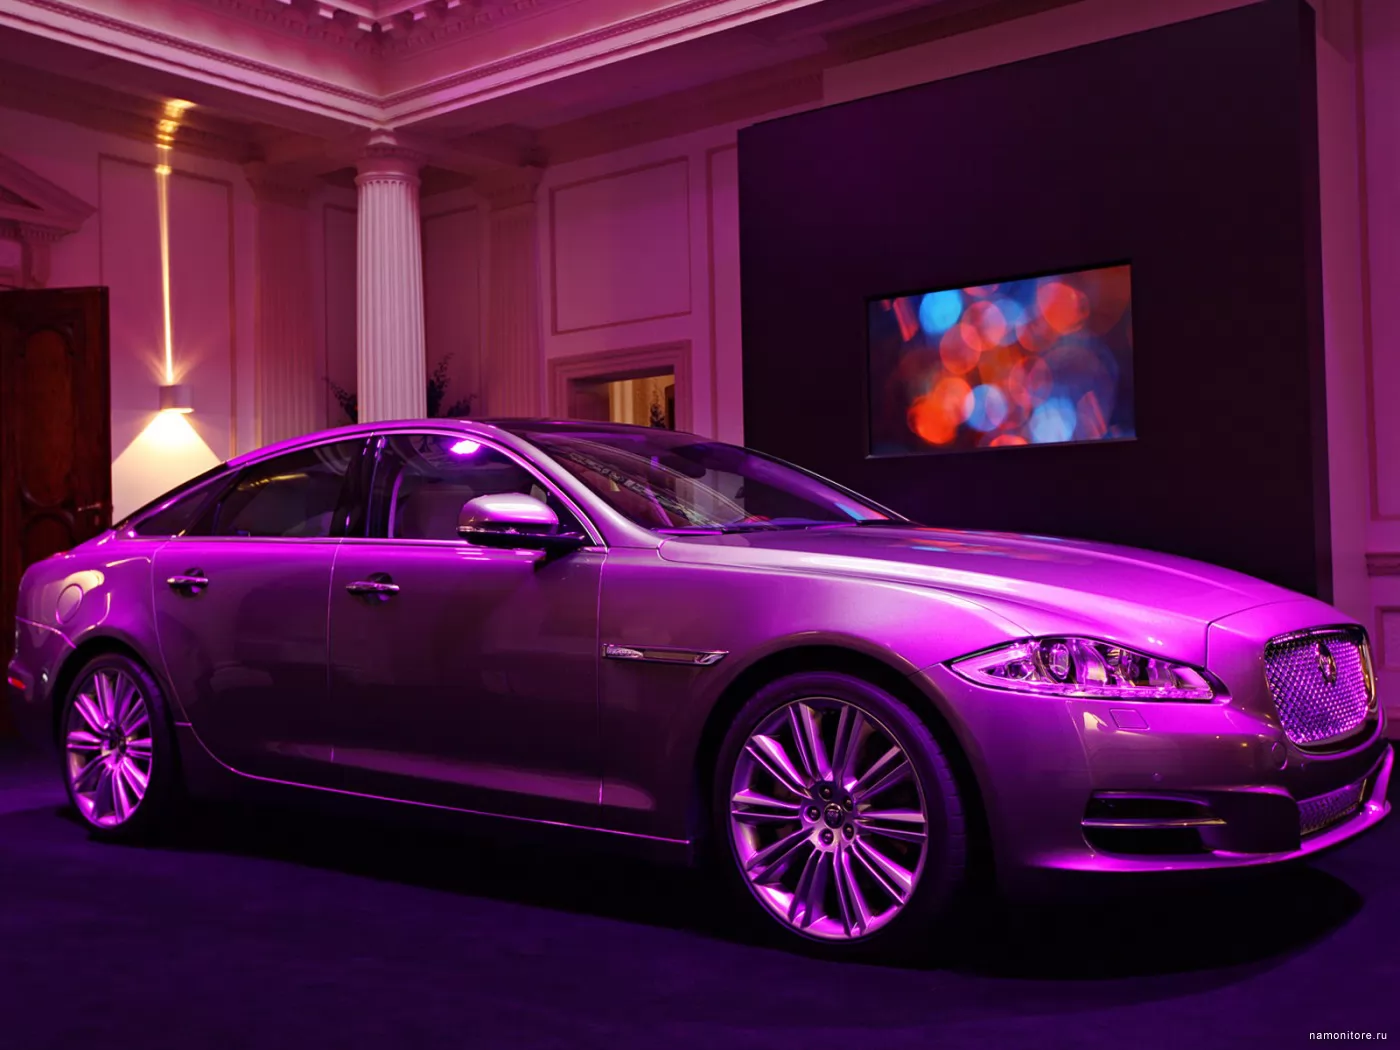 Jaguar XJ, cars, Jaguar, technics, violet x